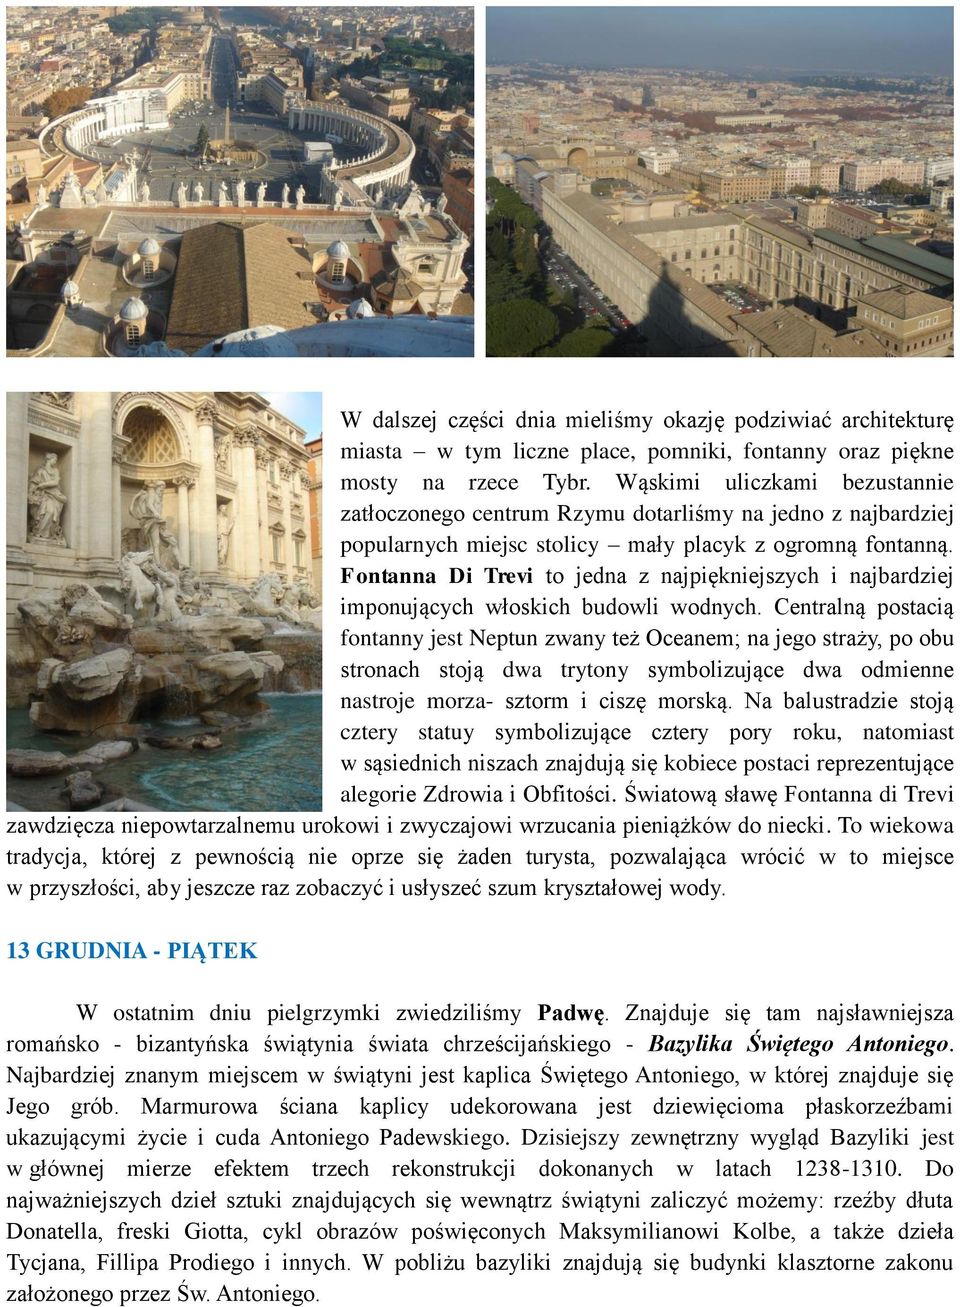 Fontanna Di Trevi to jedna z najpiękniejszych i najbardziej imponujących włoskich budowli wodnych.